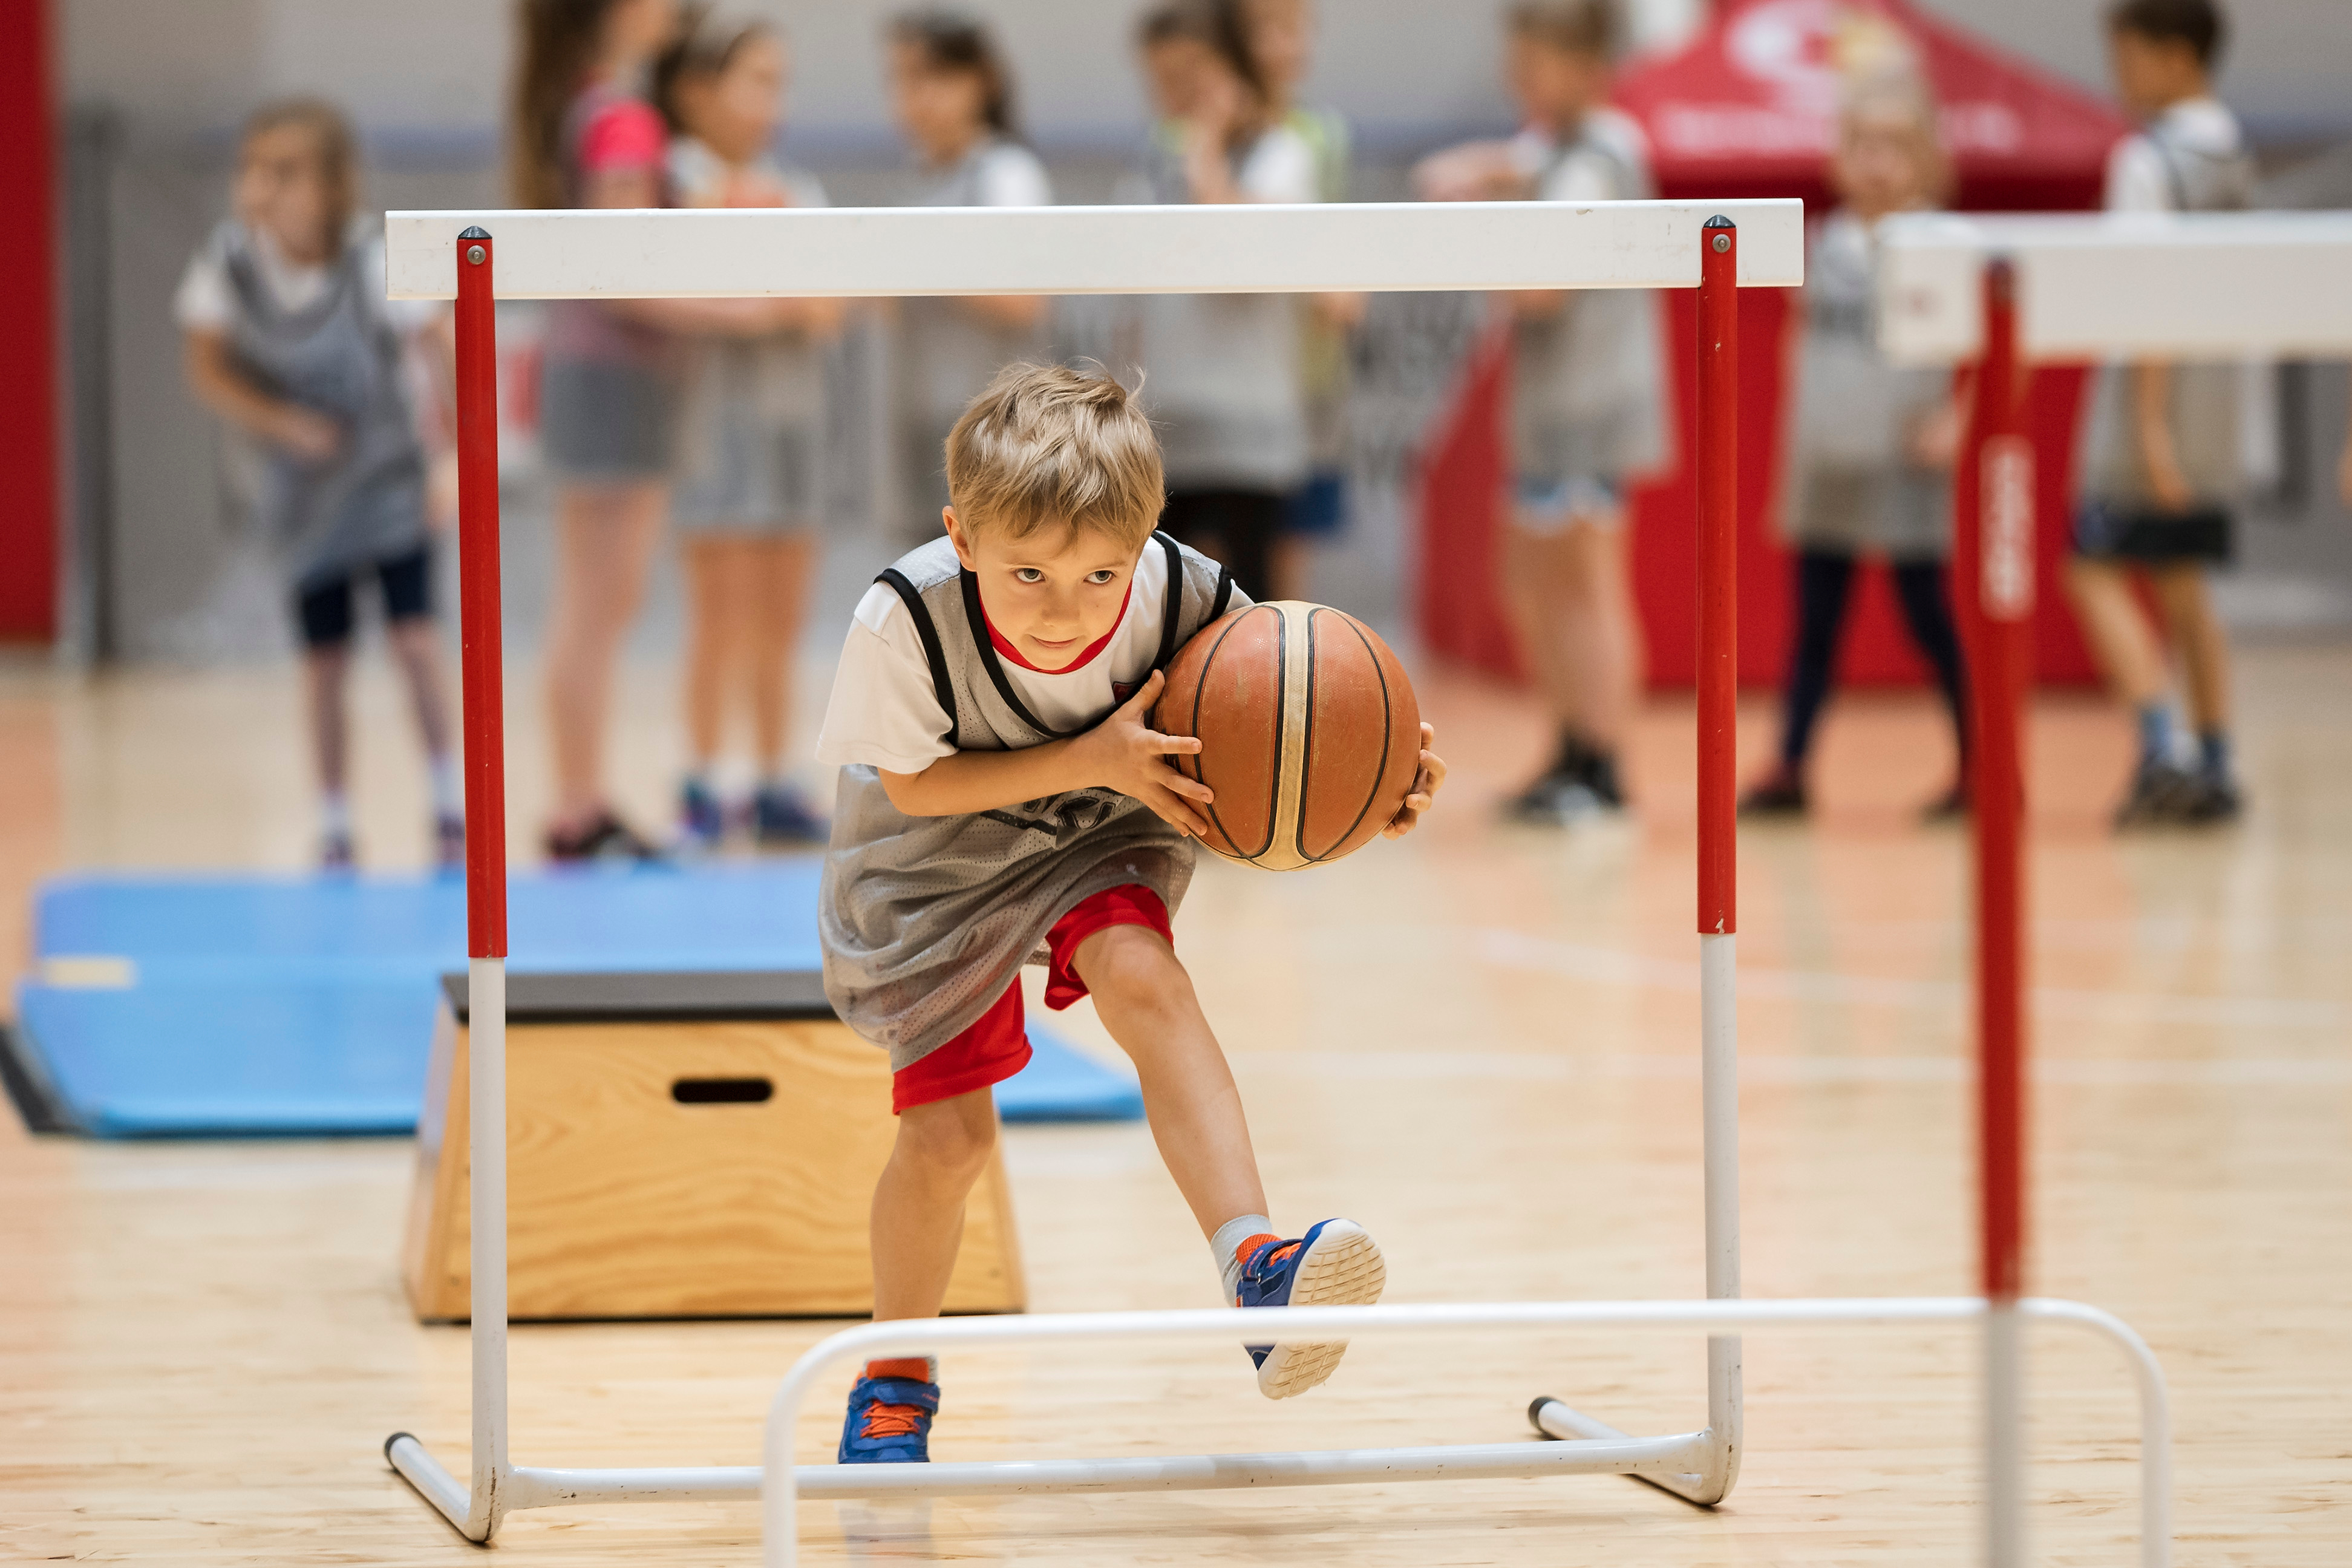 Een jongentje is met plezier aan het rennen met een basketbal onder een poortje door.